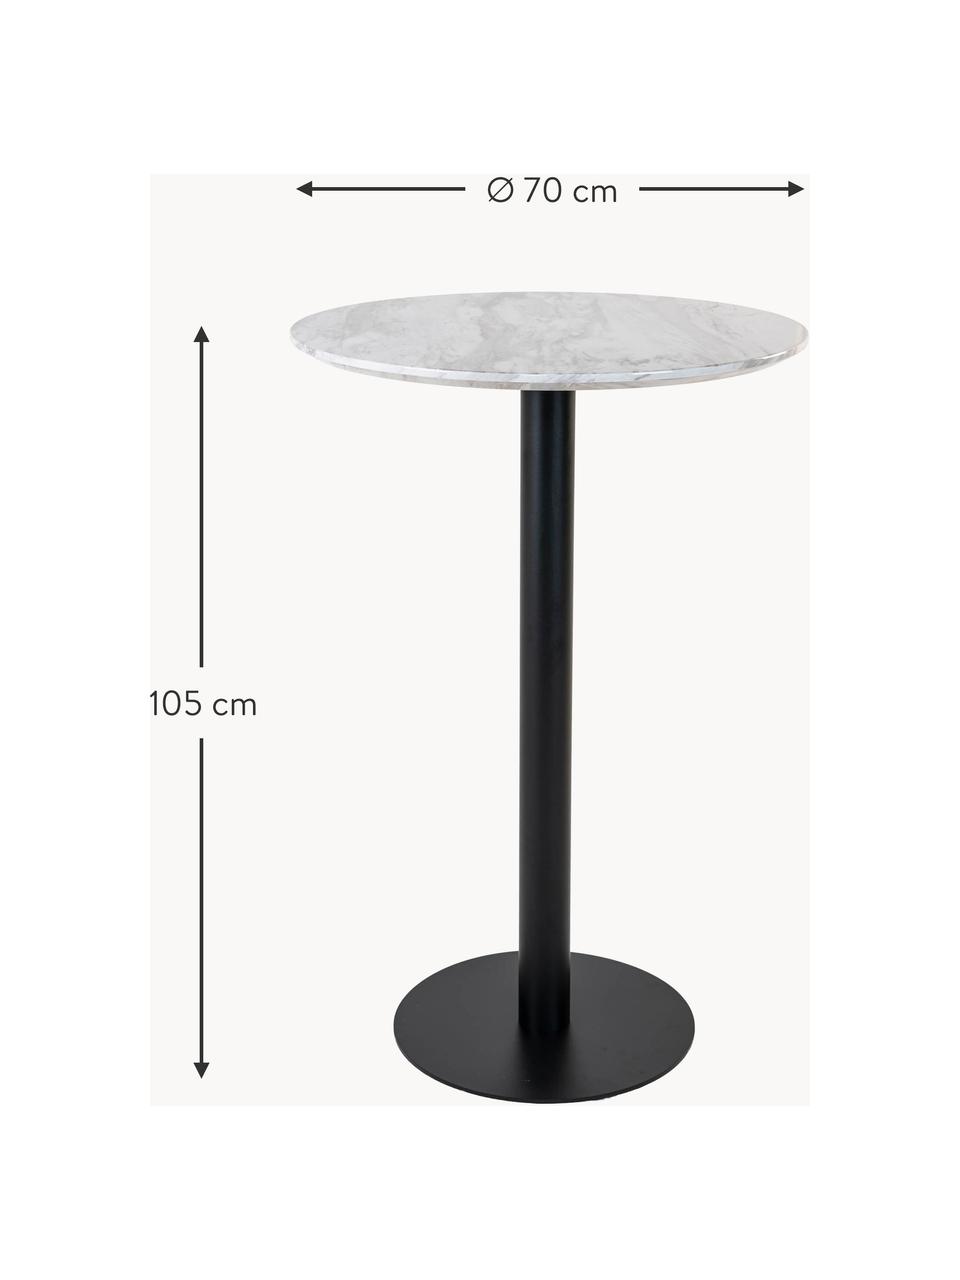 Kulatý jídelní stůl v mramorovém vzhledu Bolzano, Ø 70 cm, Bílá mramorová, černá, Ø 70 cm, V 105 cm